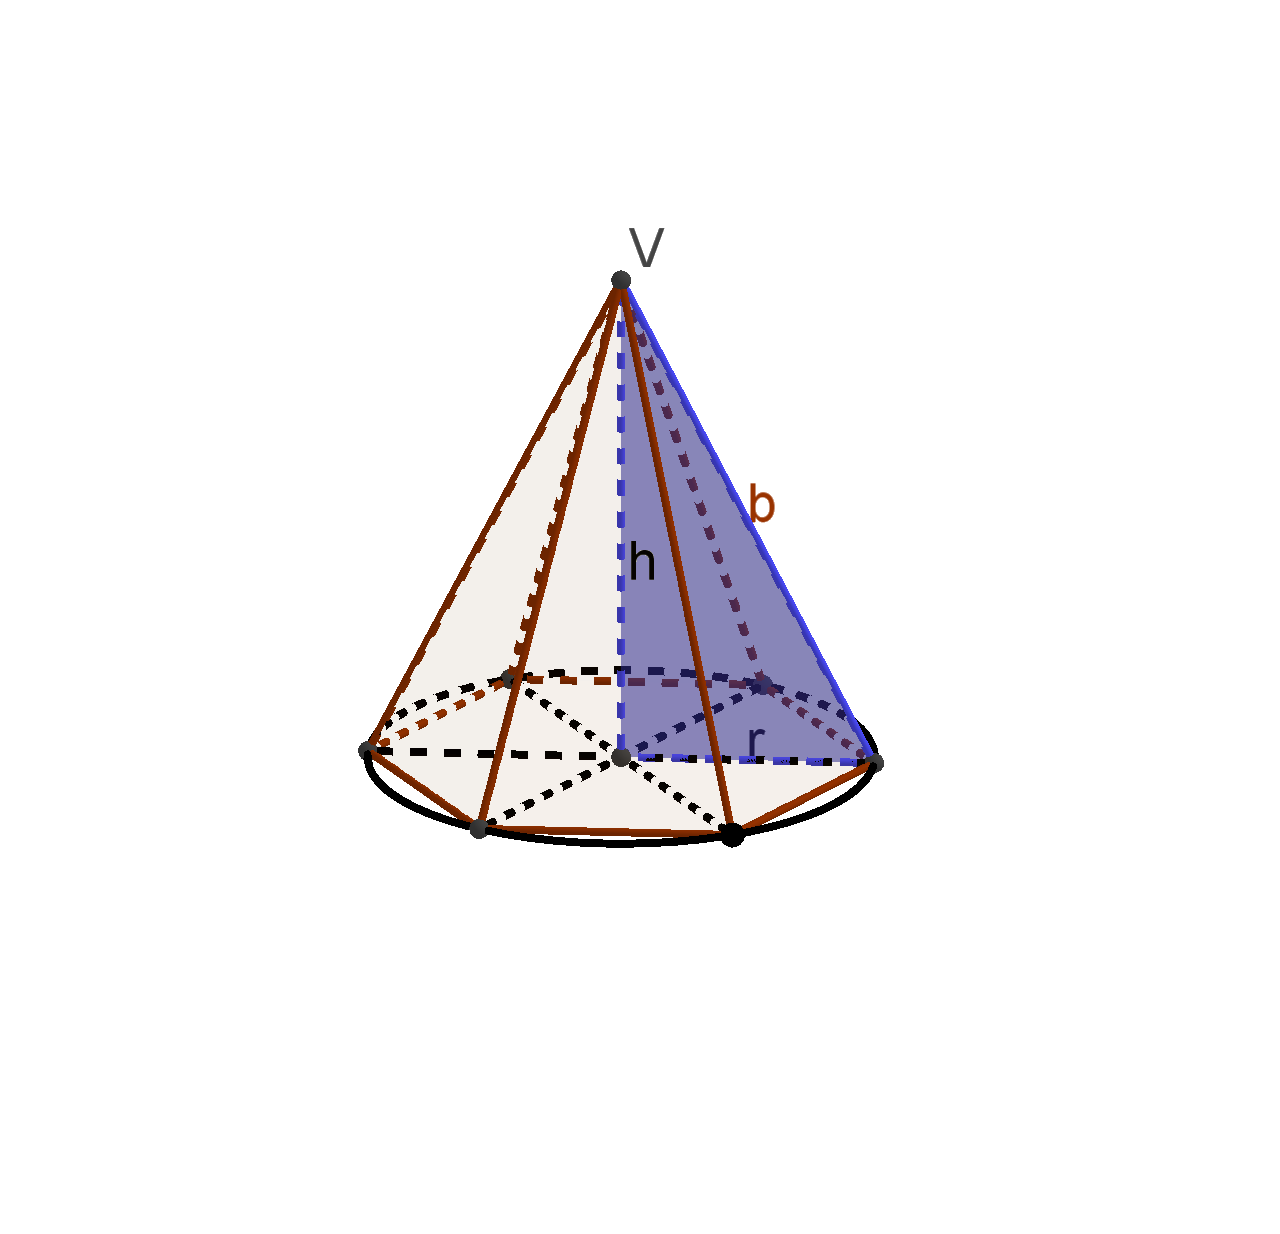 Pravilna šesterostrana piramida s jednakim duljinama bridova